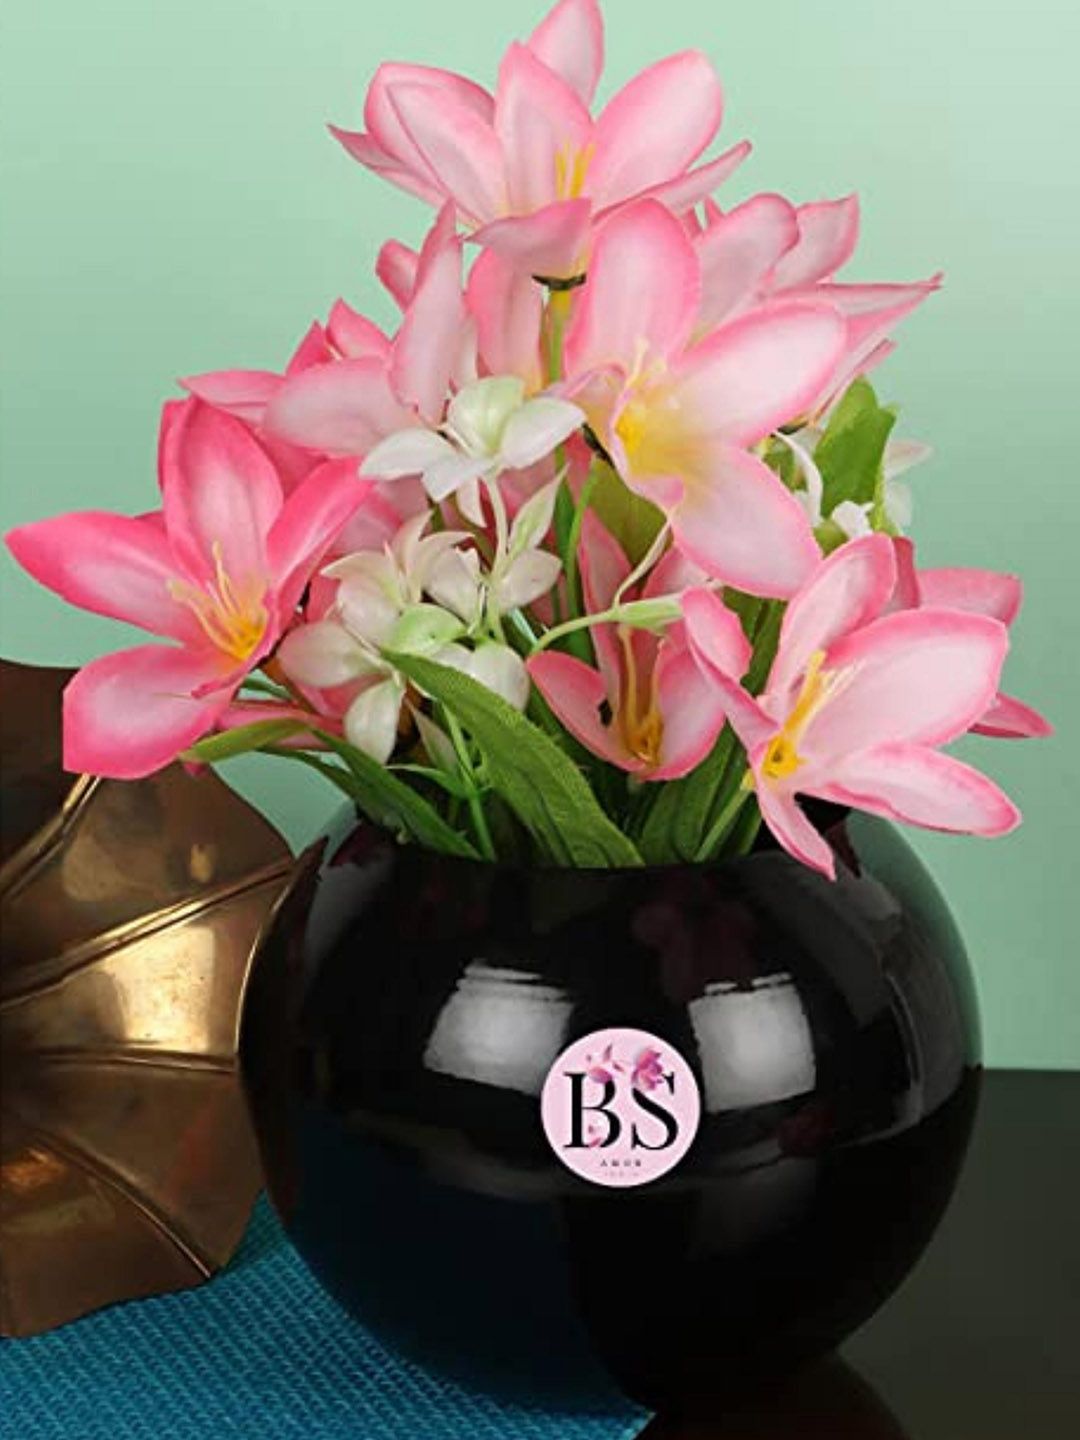 BS AMOR Black Solid Metal Flower Vase Price in India